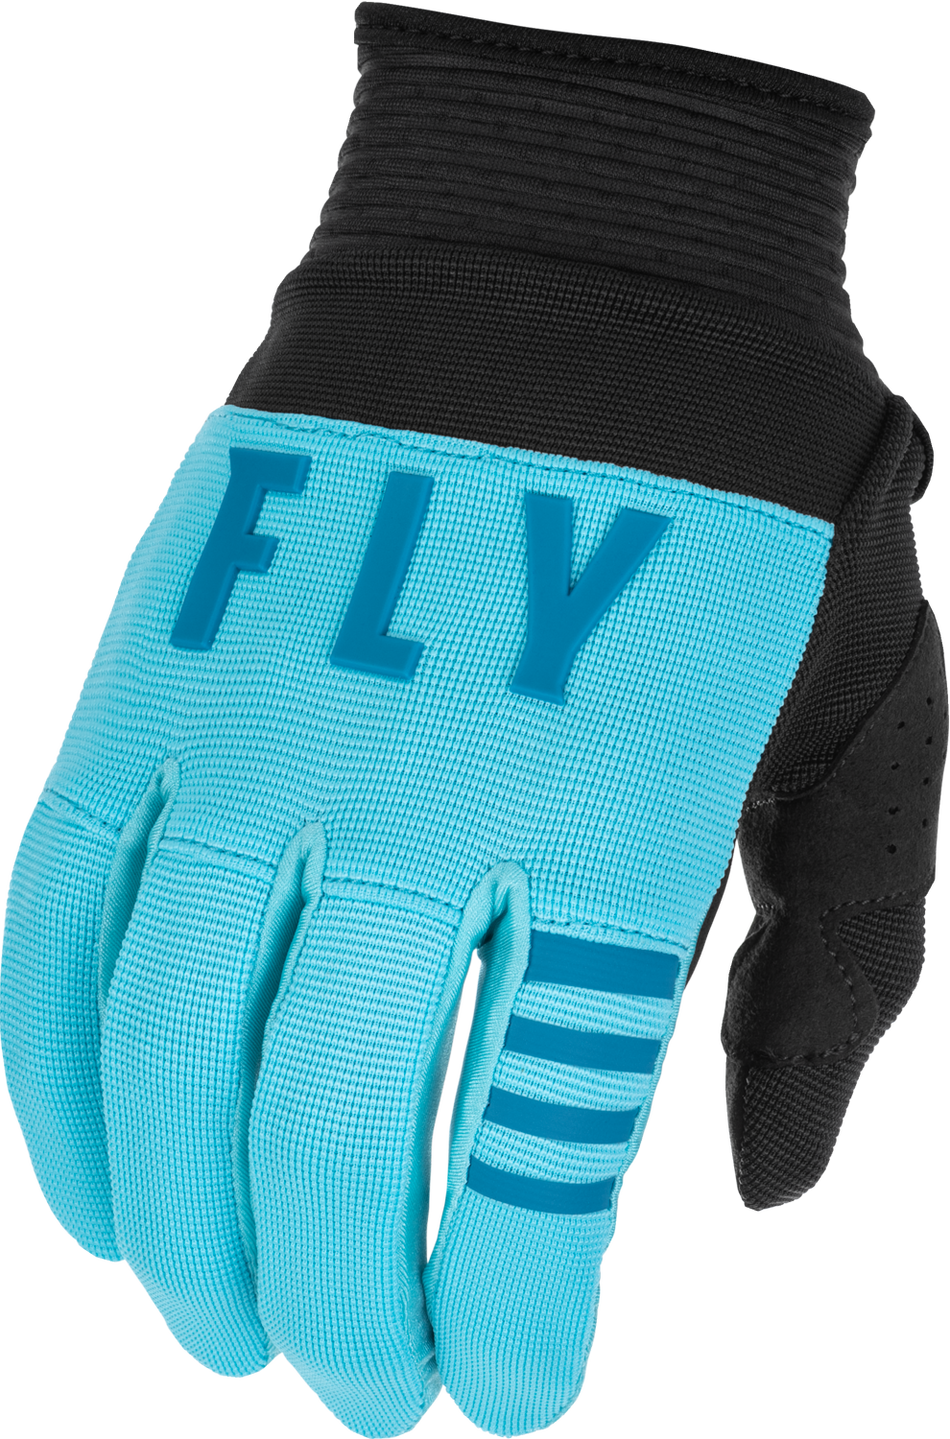 FLY RACING Youth F-16 Gloves Aqua/Dark Teal/Black Y3xs 375-810Y3XS